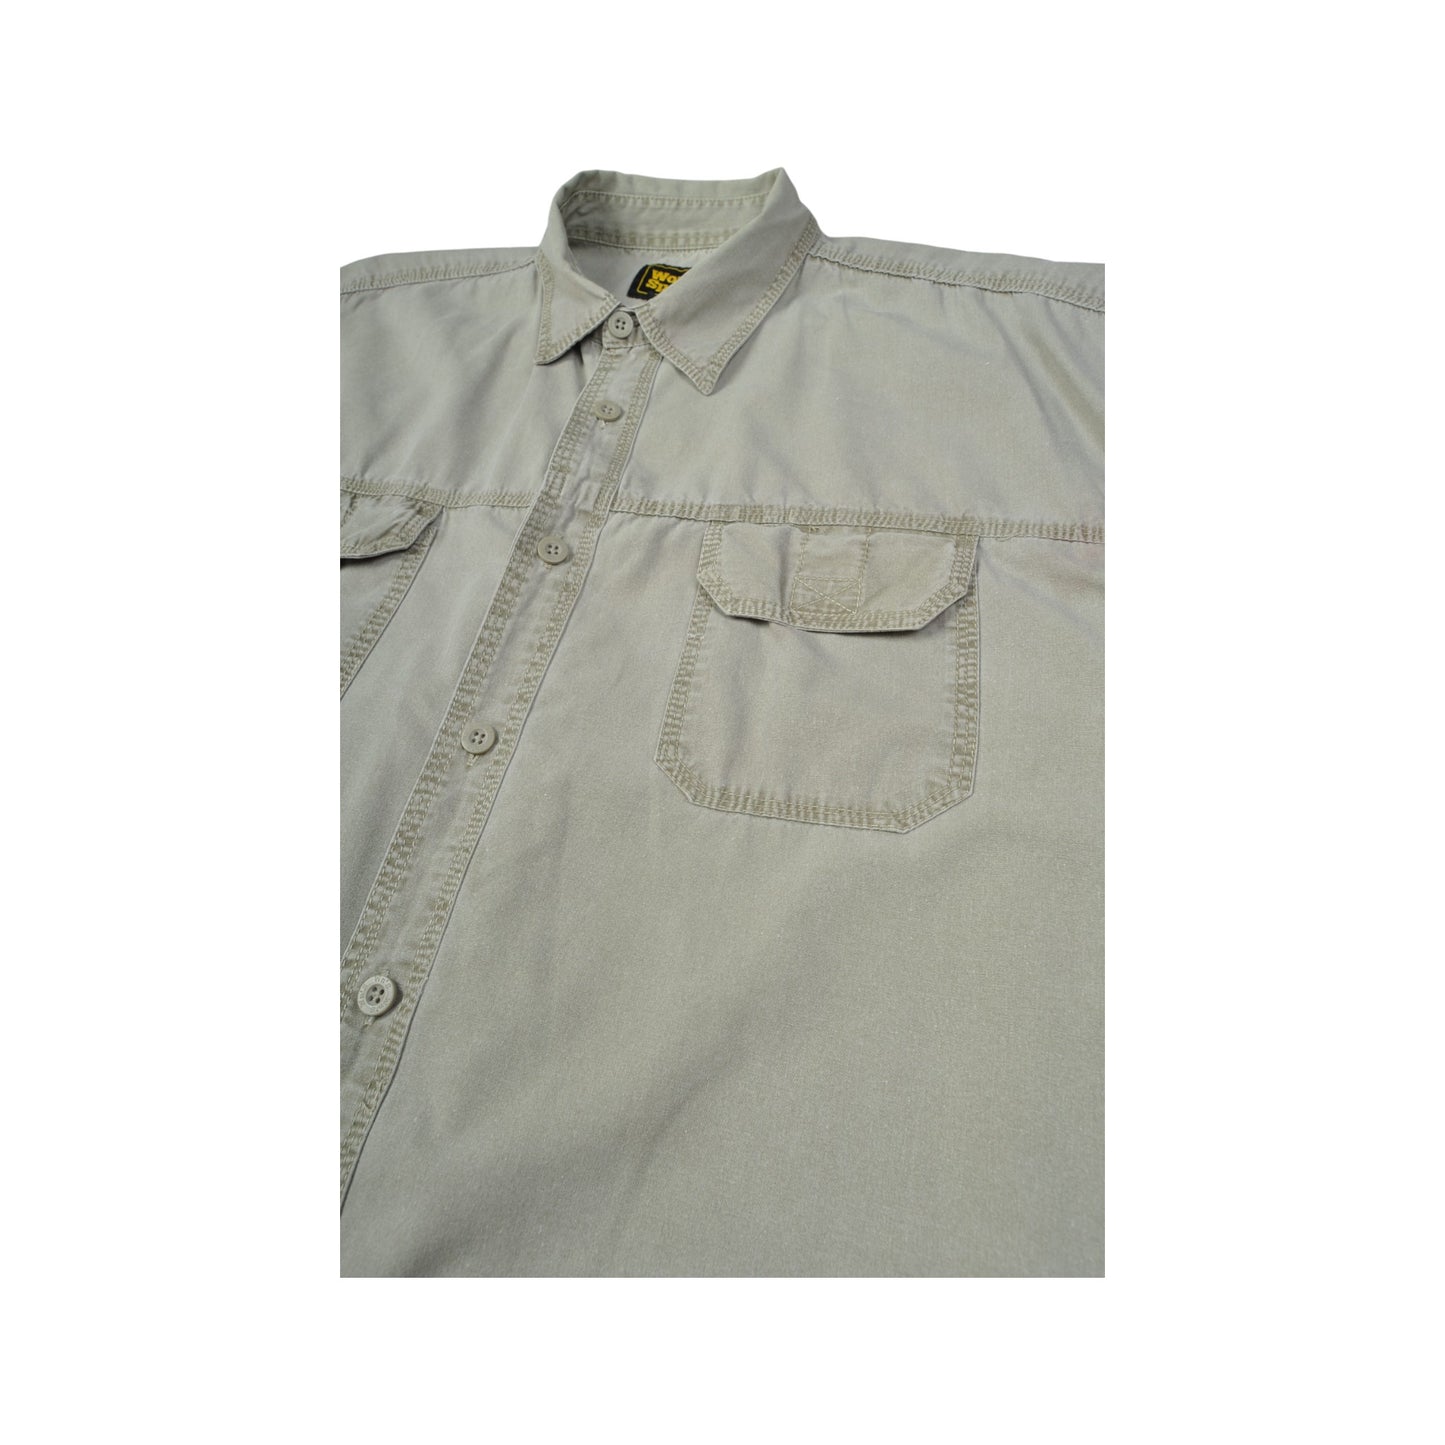 Vintage Shirt 90s Short Sleeve Grey XXL